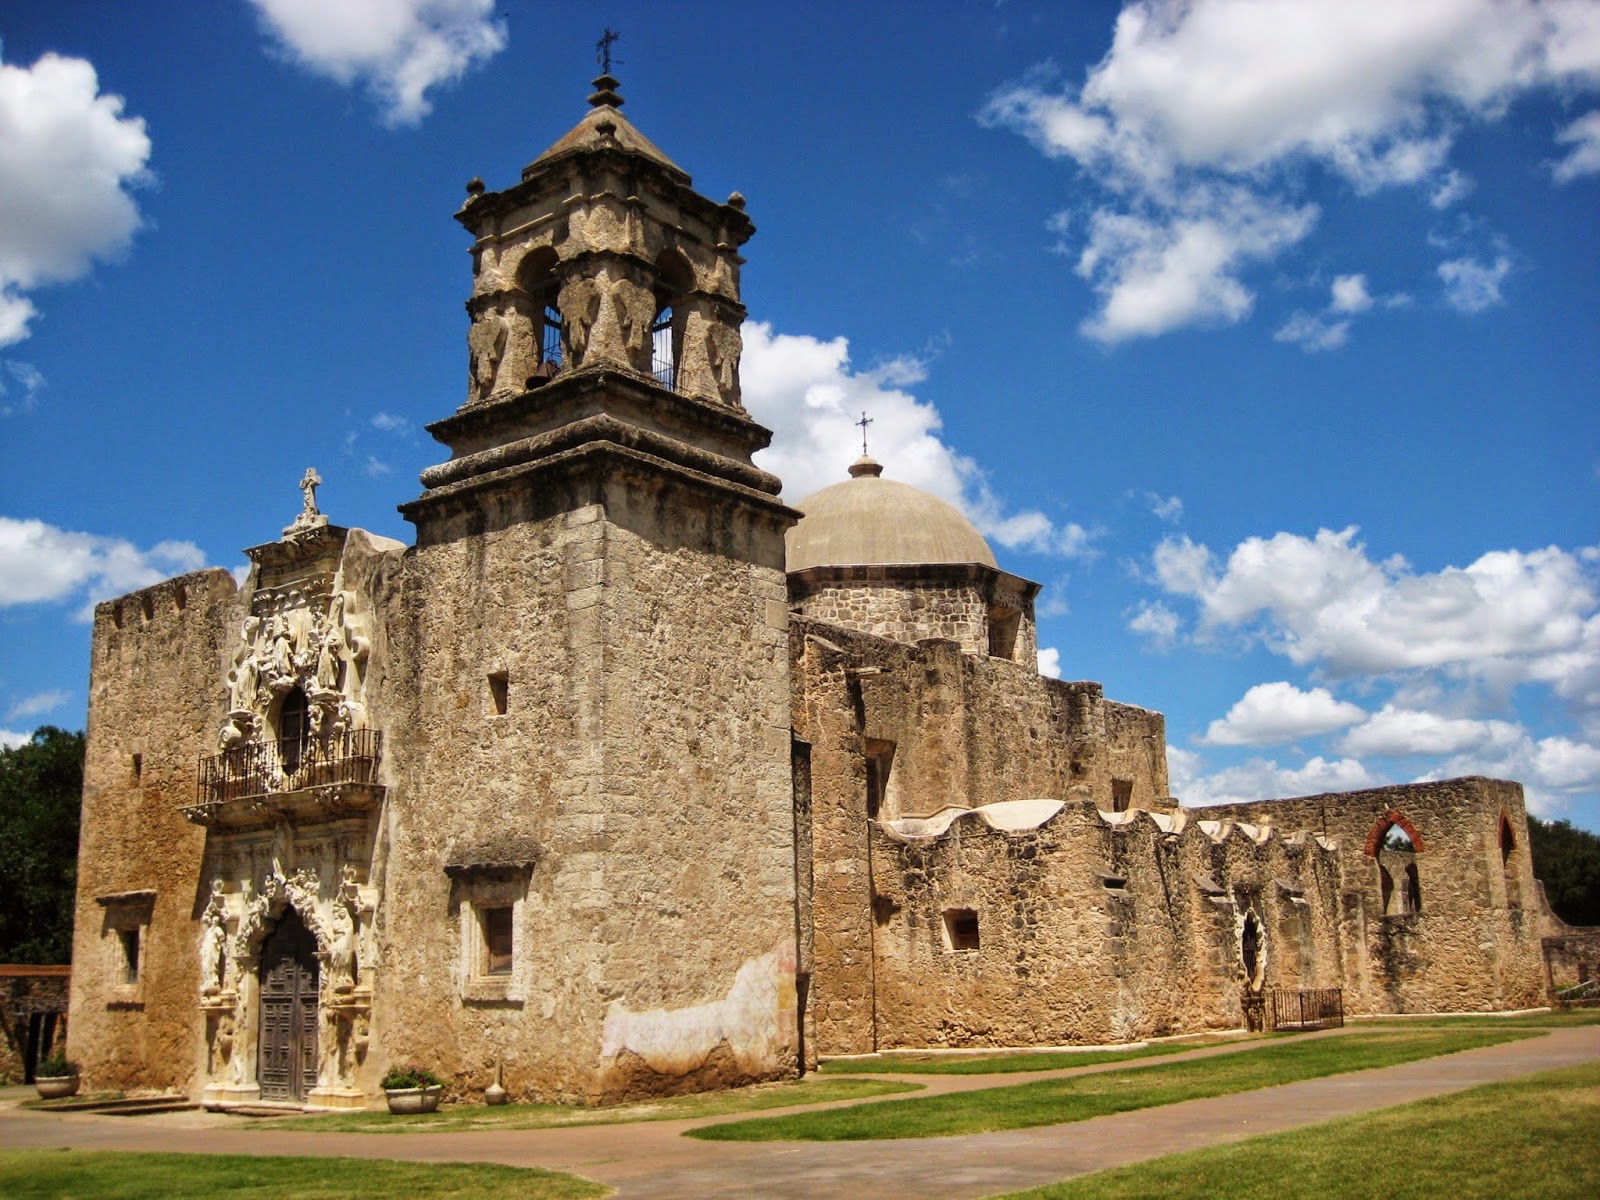 ABT UNK: Those Places Thursday: San Antonio Missions National